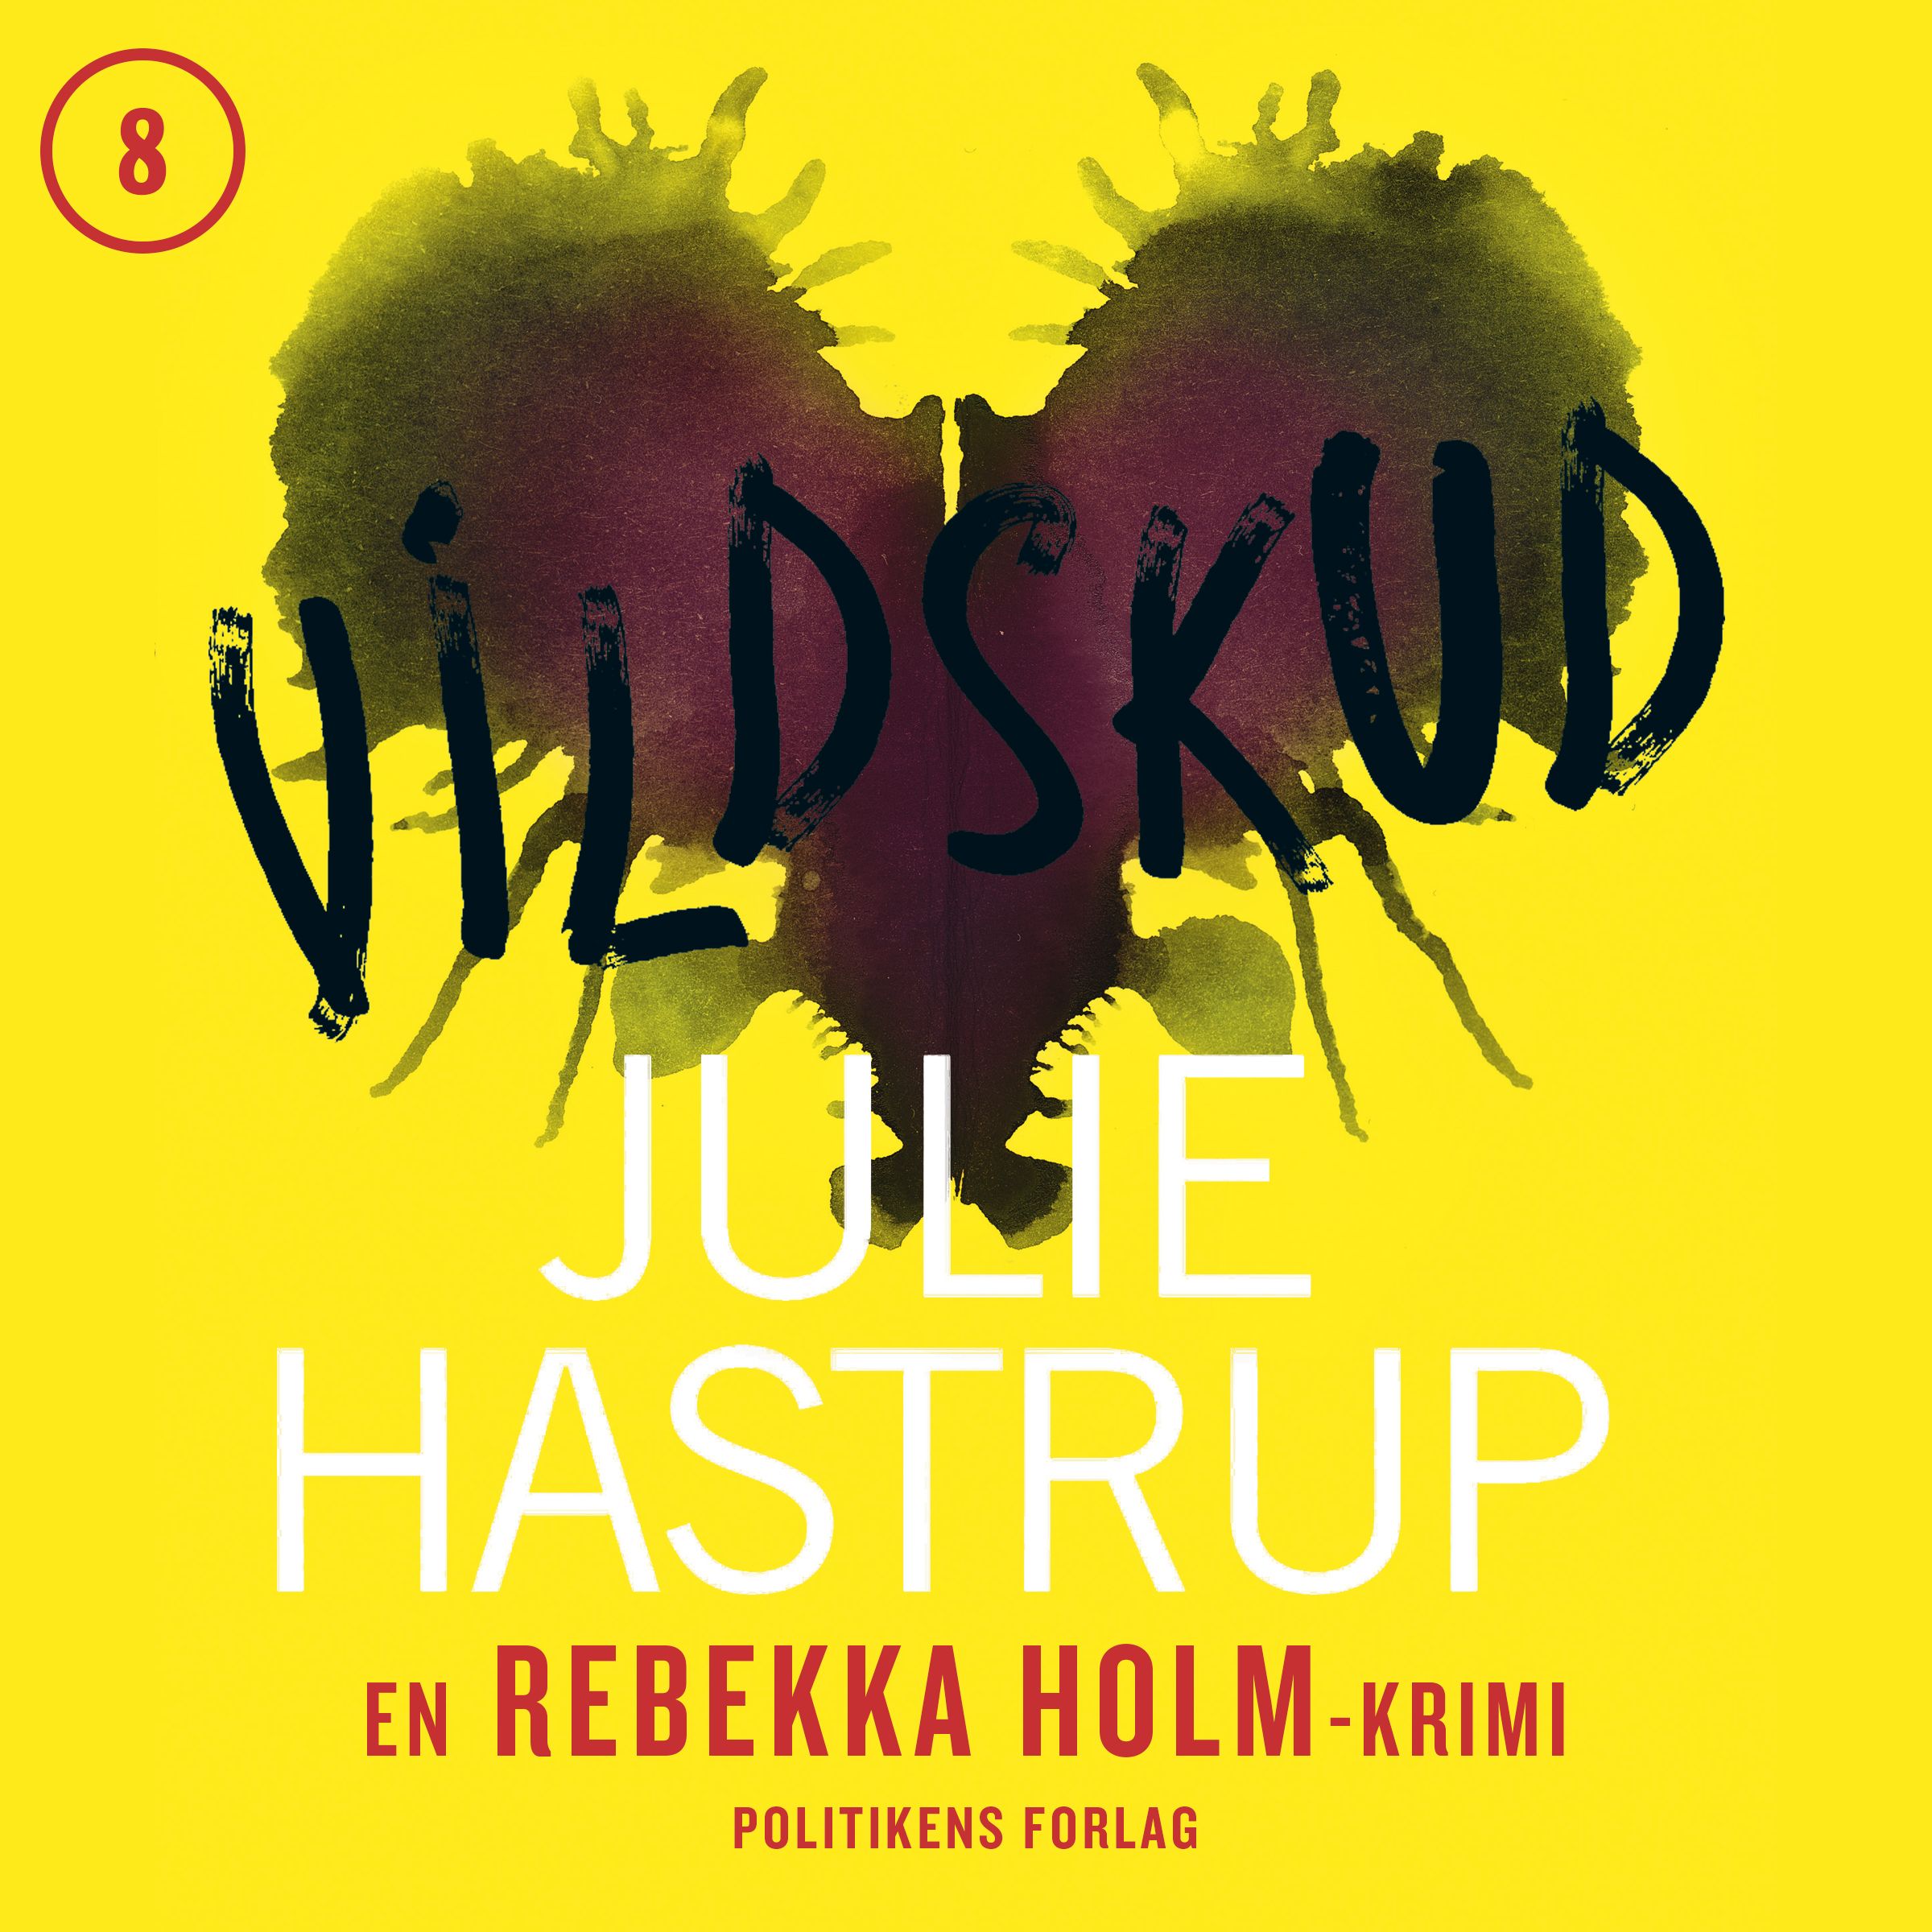 Vildskud, ljudbok av Julie Hastrup